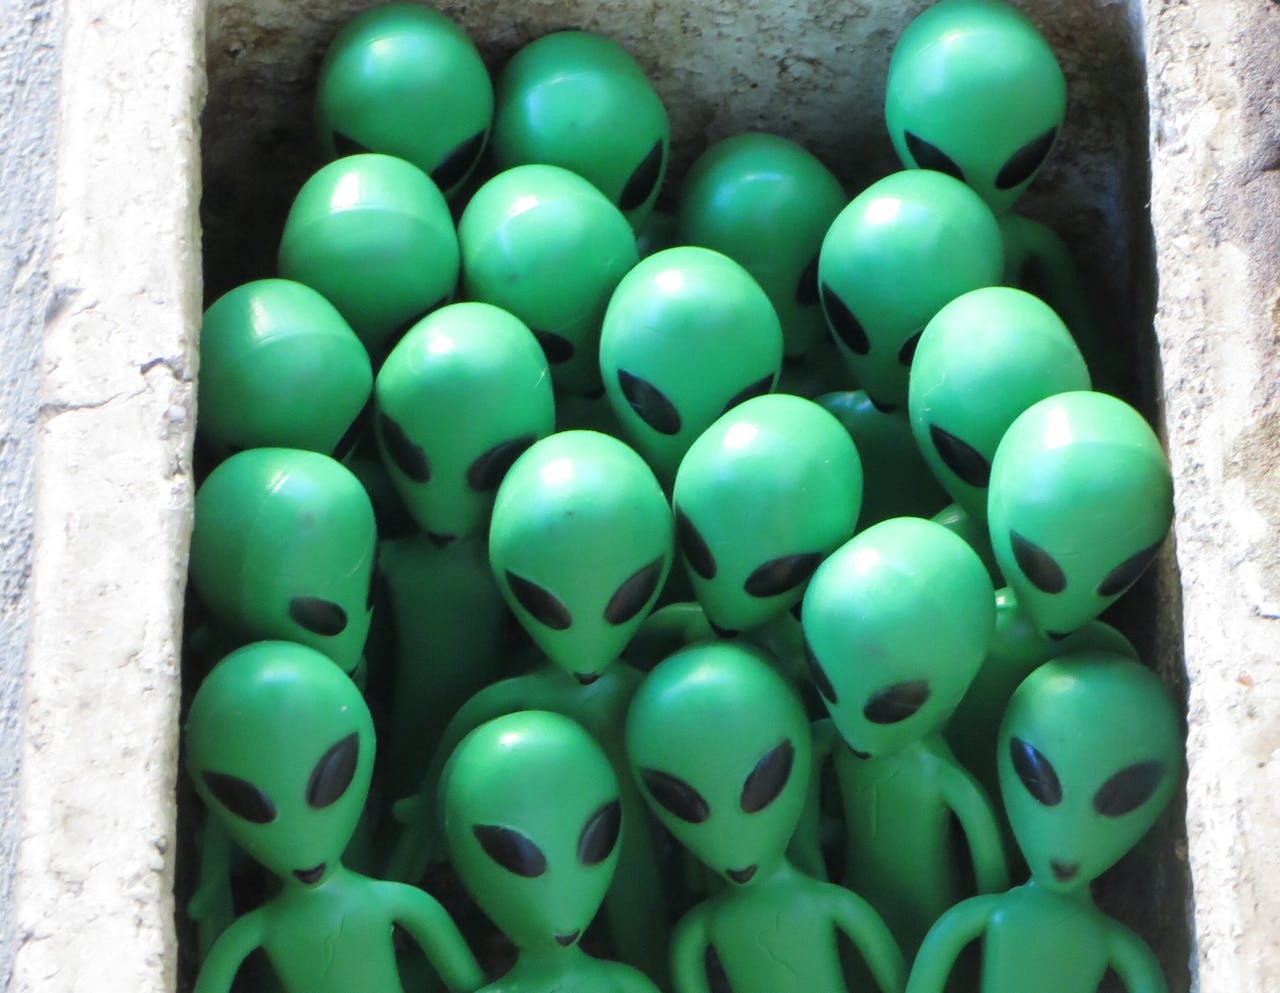 Een groep groene beeldjes van buitenaardse wezens in een doos.